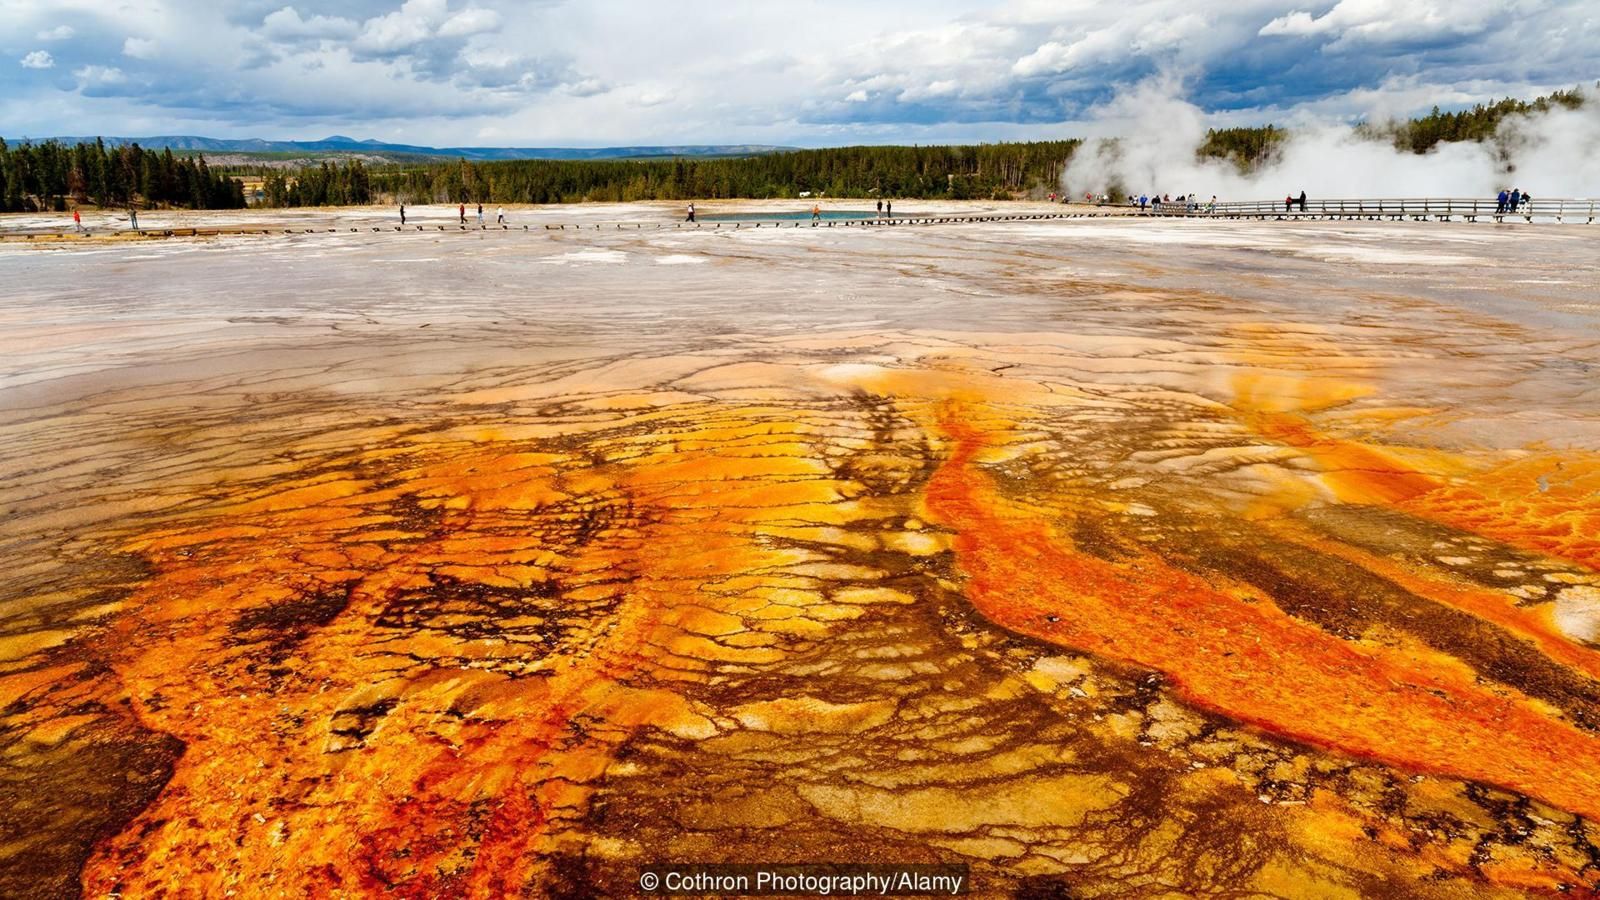 Belki de yaşam, ABD'deki Yellowstone Ulusal Parkı'nda bulunan bu volkanik gölet gibi bir yerde başlamıştı.